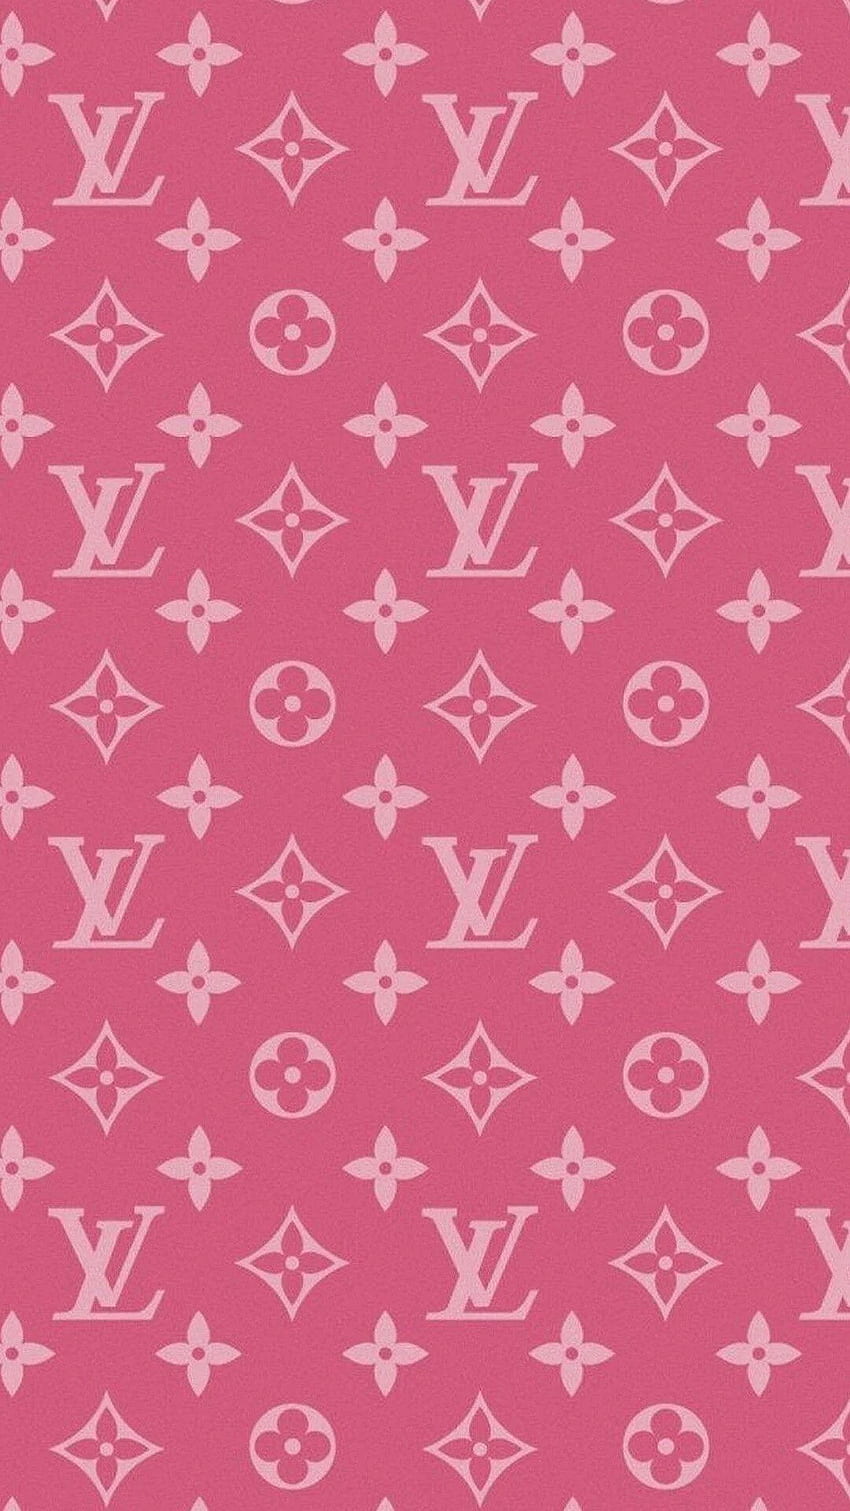 Baixe o papel de parede Louis Vuitton para o seu celular em imagens  verticais de alta qualidade Louis Vuitton gratuitamente